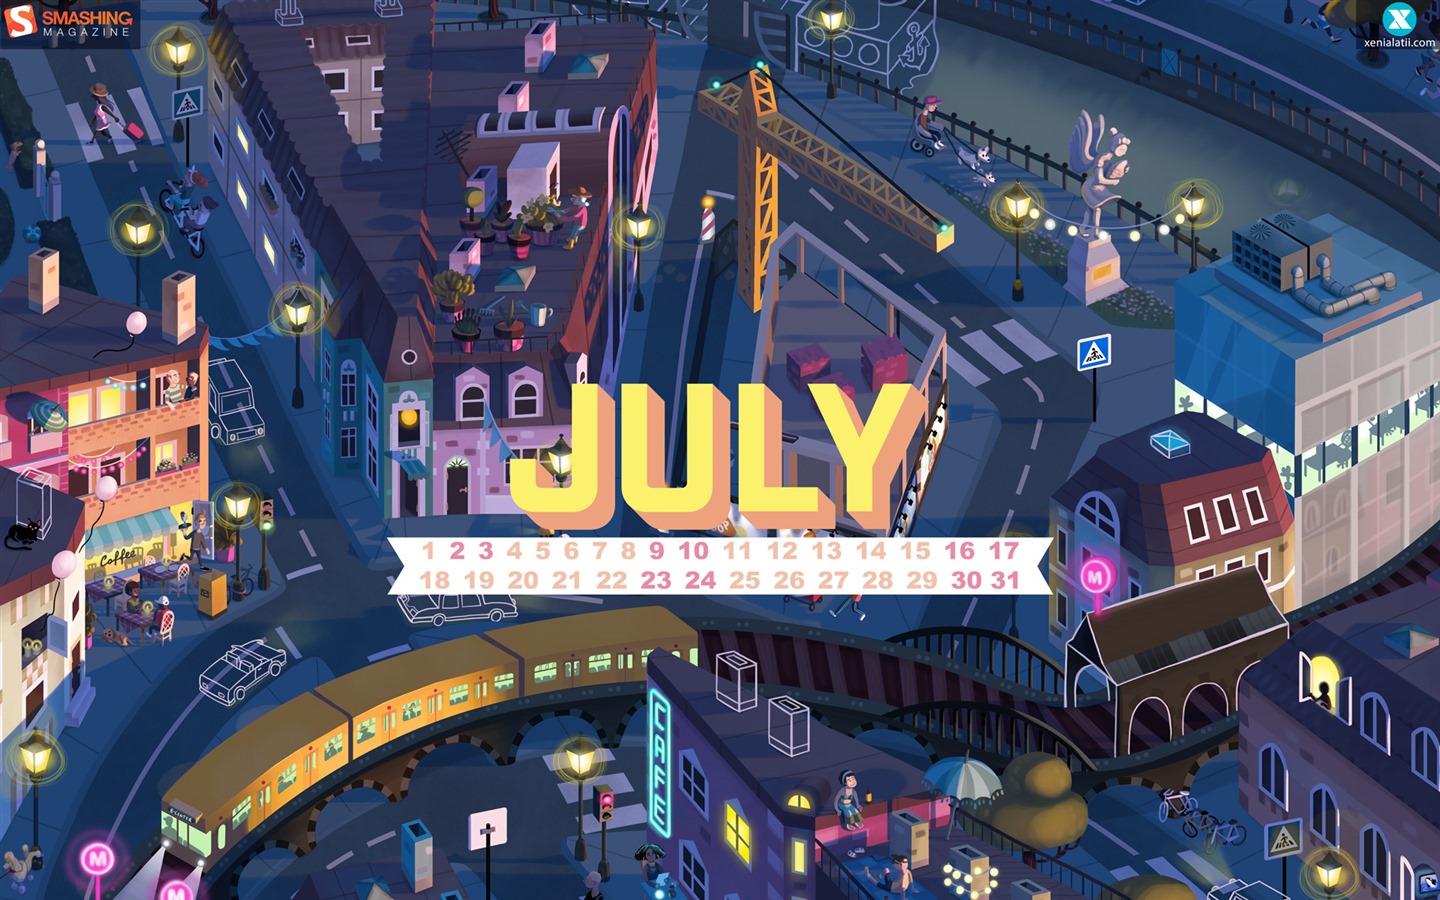 July 2016 calendar wallpaper (1) #1 - 1440x900